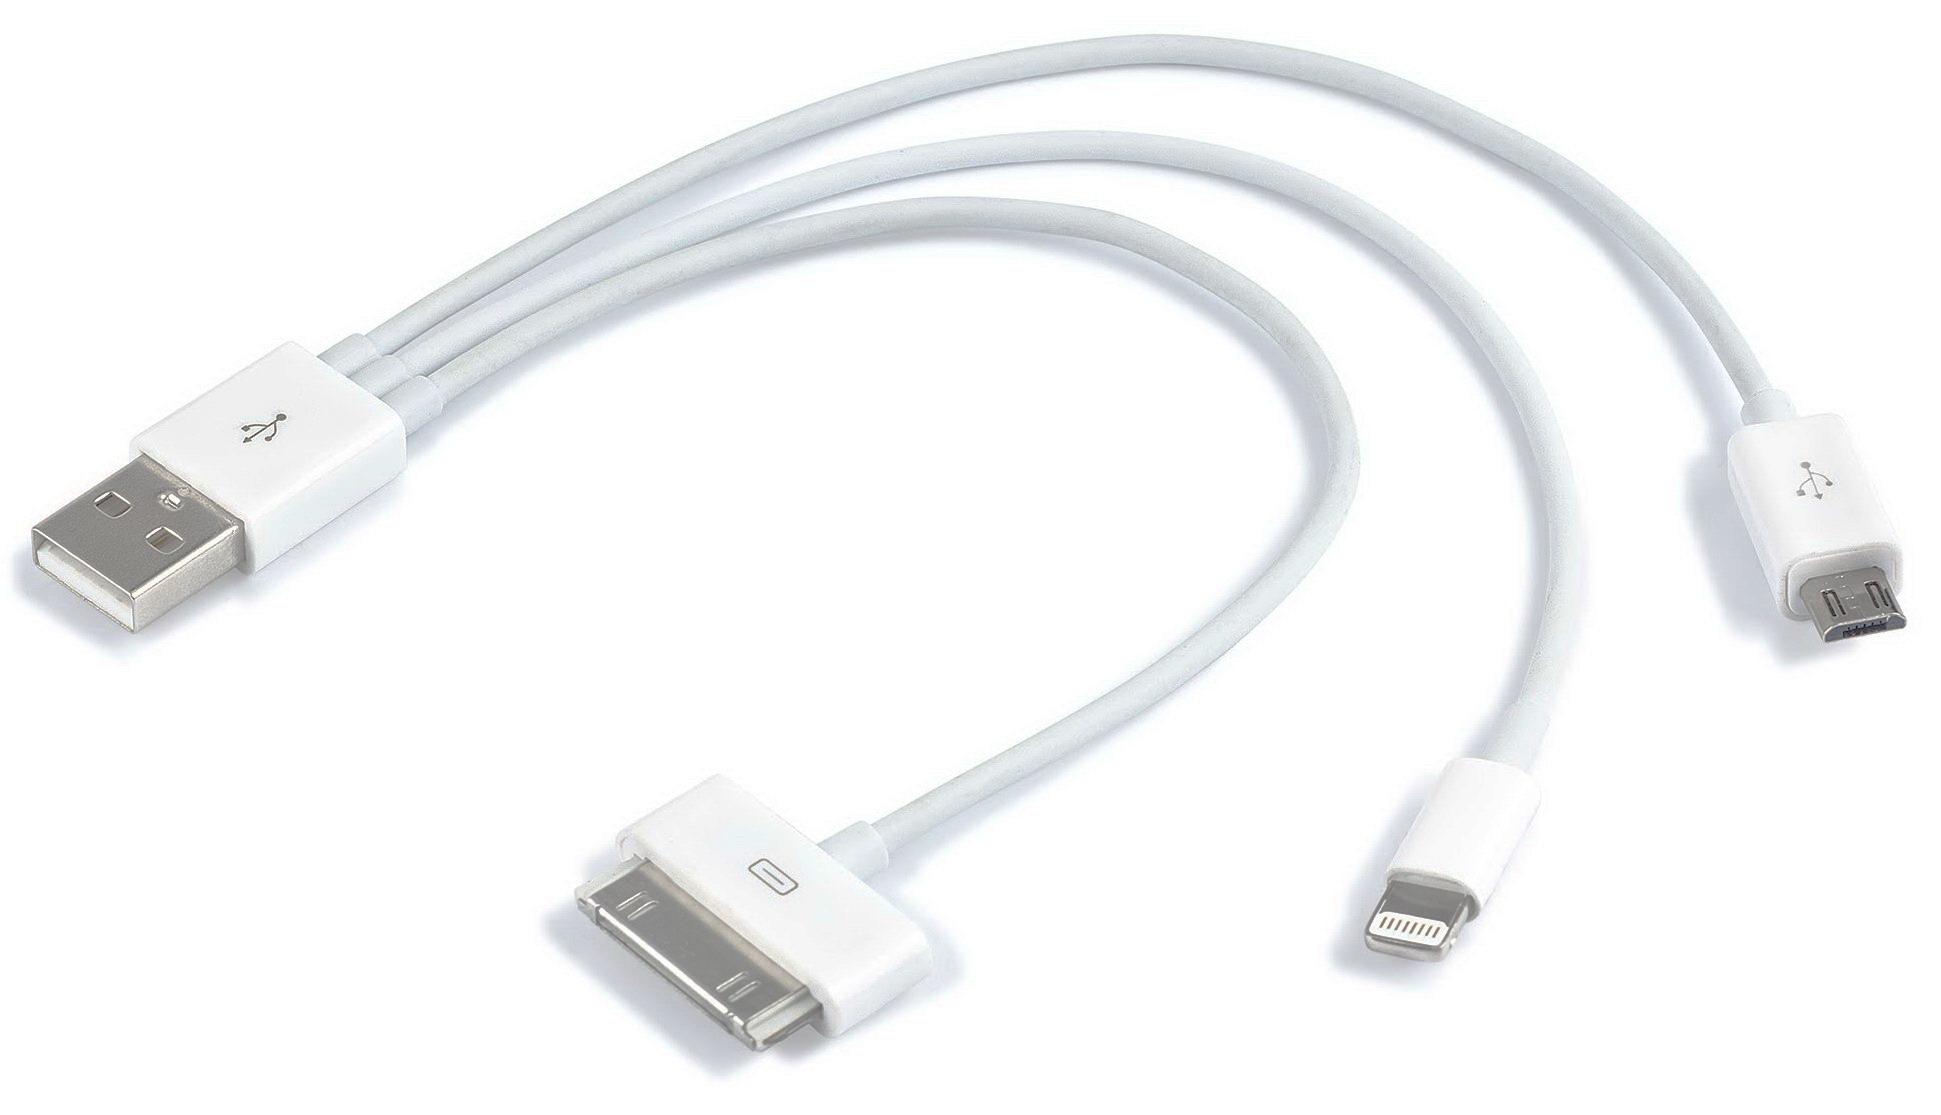 Allergie Smaak Proficiat 3 in 1 USB Kabel - USB naar Apple 30pins, Apple Lightning en microUSB |  Saake-shop.nl